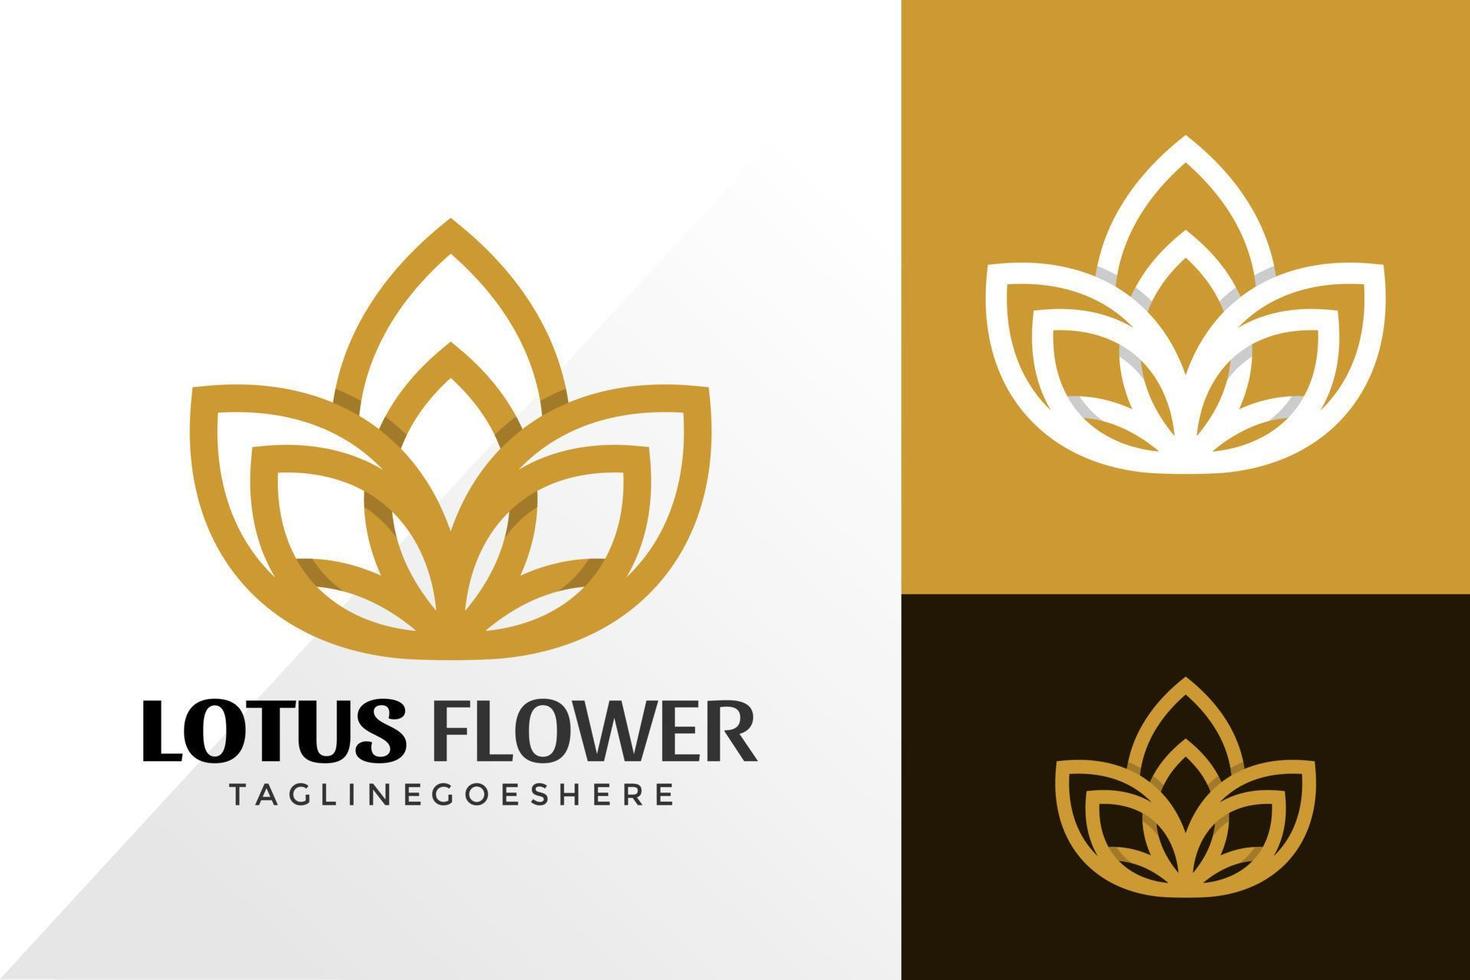 Golden Lotus Spa Logo Vector Design, Creative Logos Designs Concept for Template